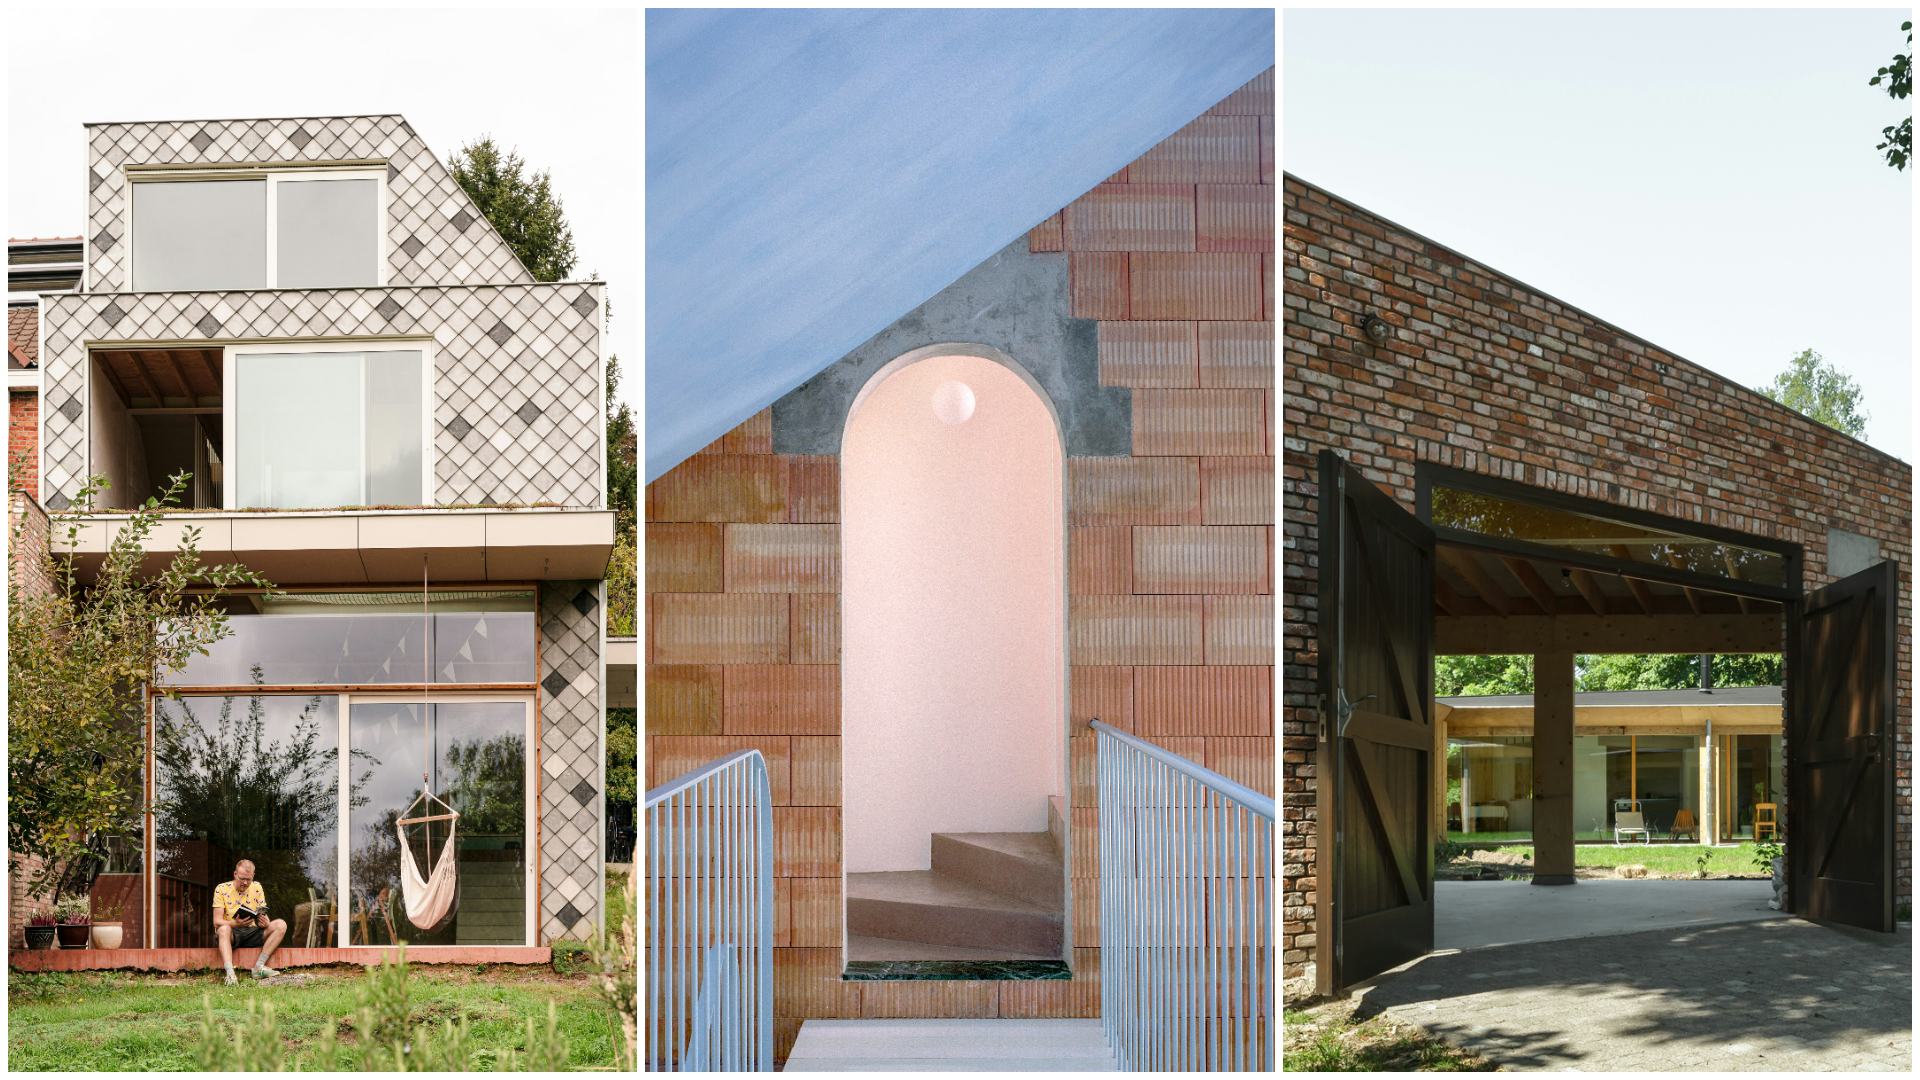 Van links naar rechts: Huis in Kessel-lo door Noma Architecten, beeld Stijn Knapen. Huis in Brussel door Mamout Architects, beeld Séverin Malaud. Huis in Sint Niklaas door Blaf architecten, beeld Stijn Bollaert